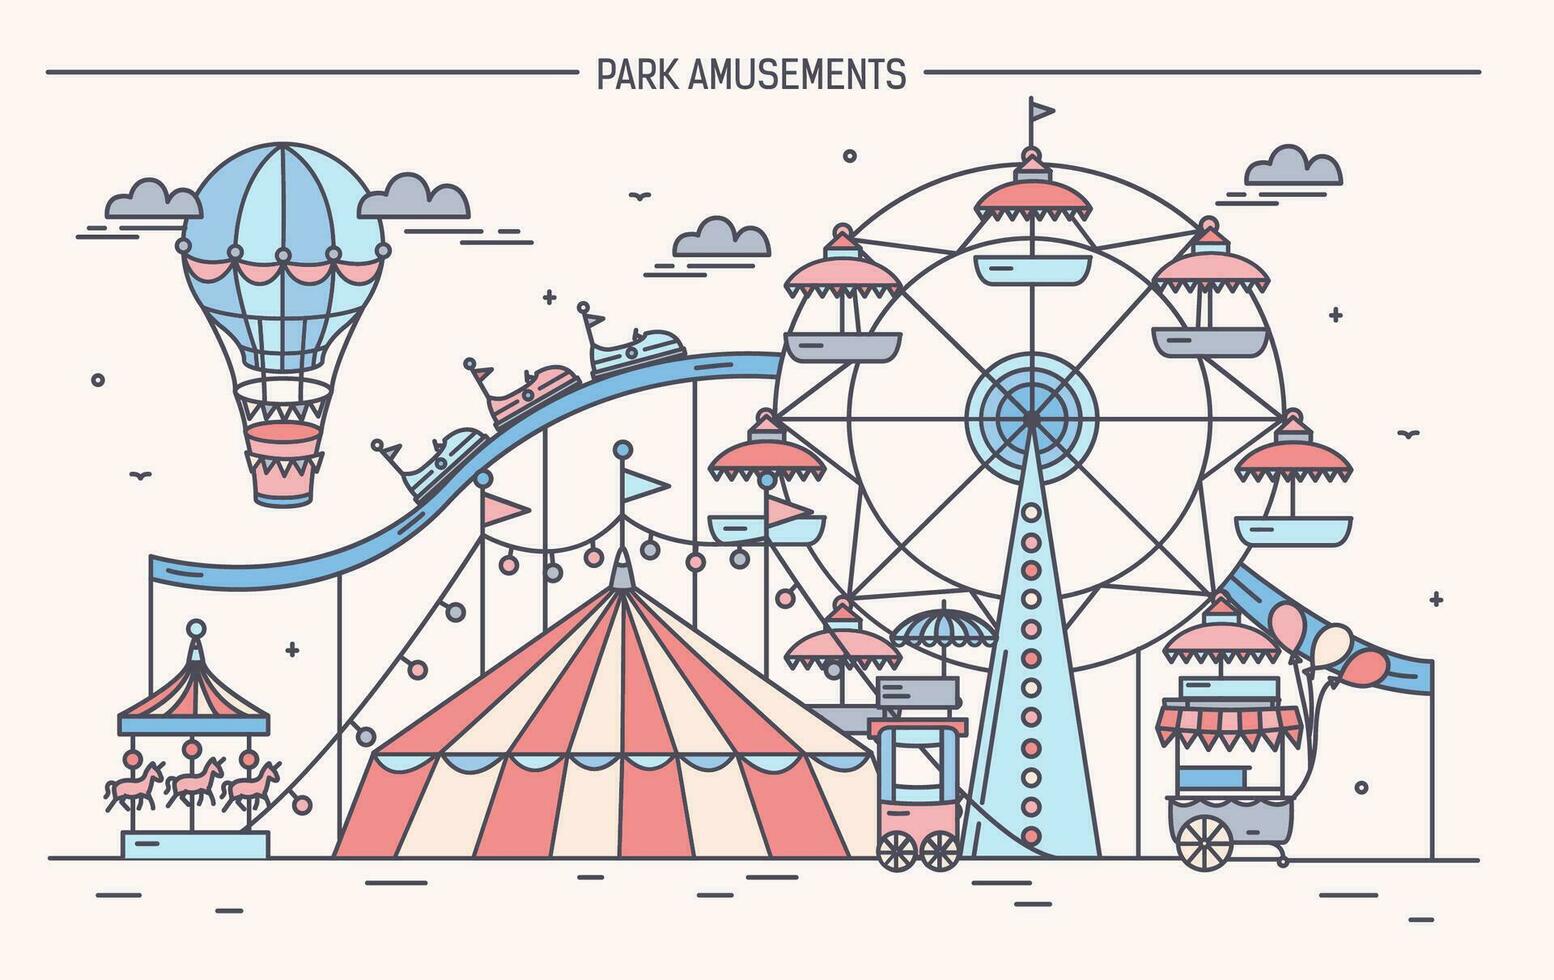 mooi hoor horizontaal banier van amusement park. circus, ferris wiel, attracties, kant visie met aerostaat in lucht. kleurrijk lijn kunst vector illustratie.